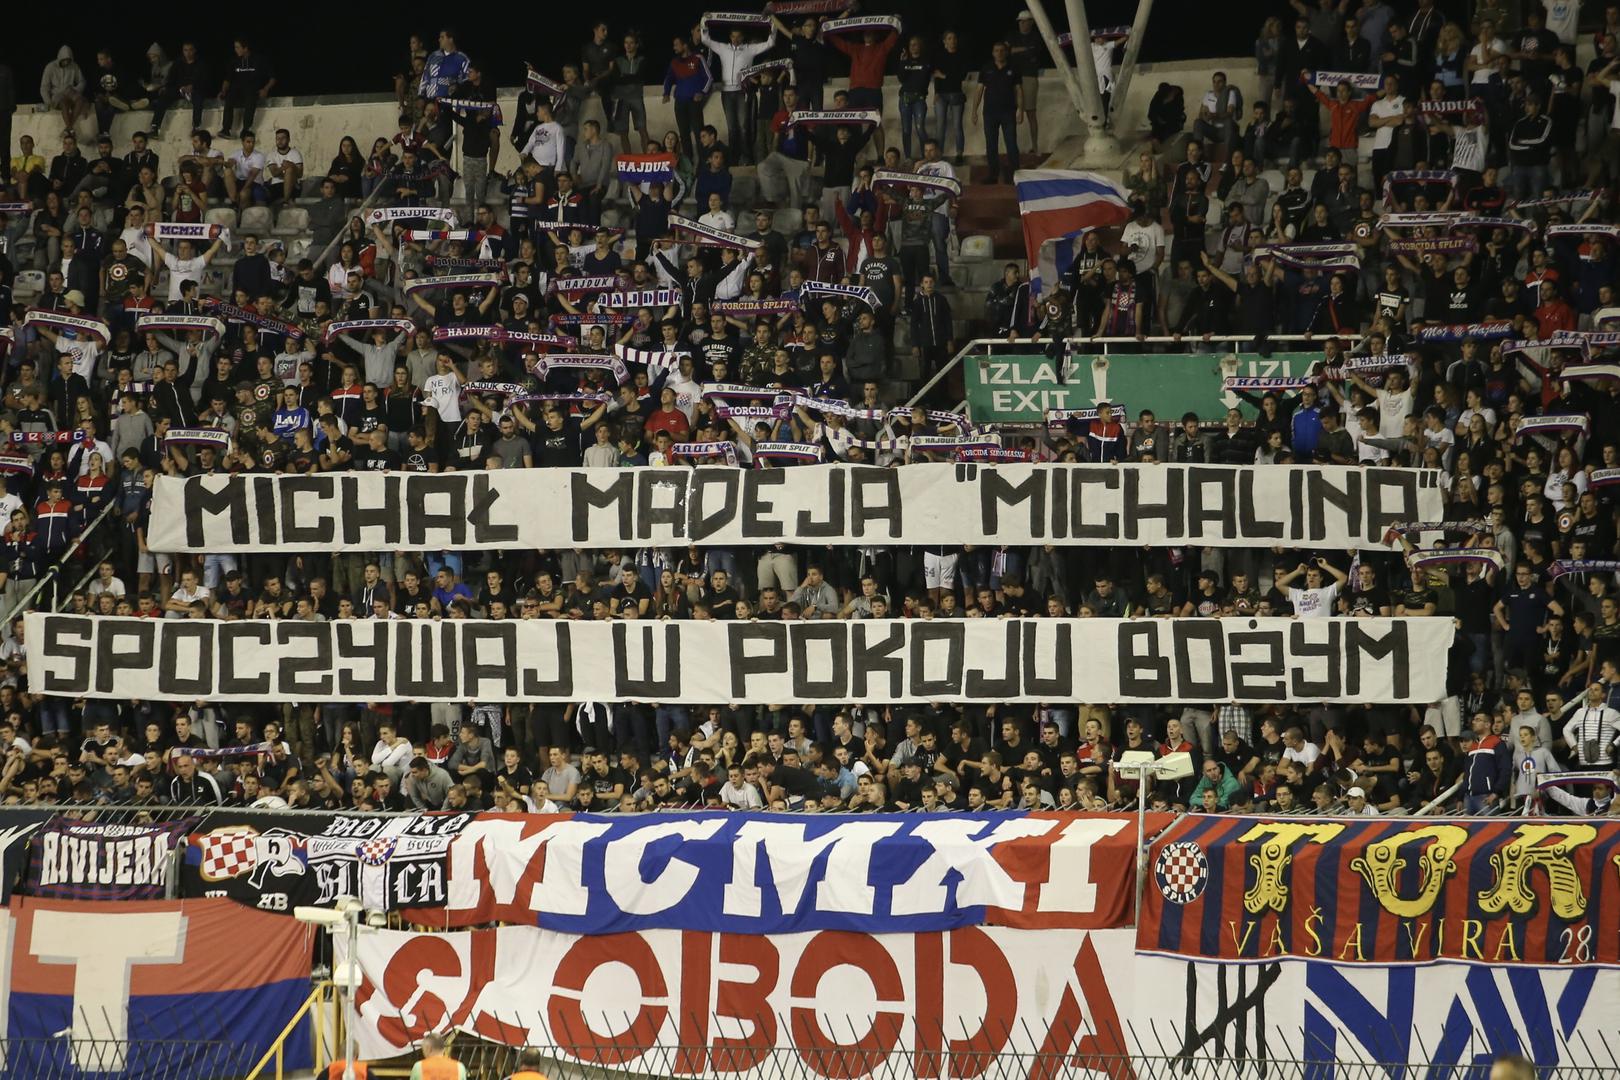 Uz to, odali su počast i ostavili poruku za preminulog člana Torcide Gornik: "Michal Madeja Michalina počivaj u miru Božjem!"